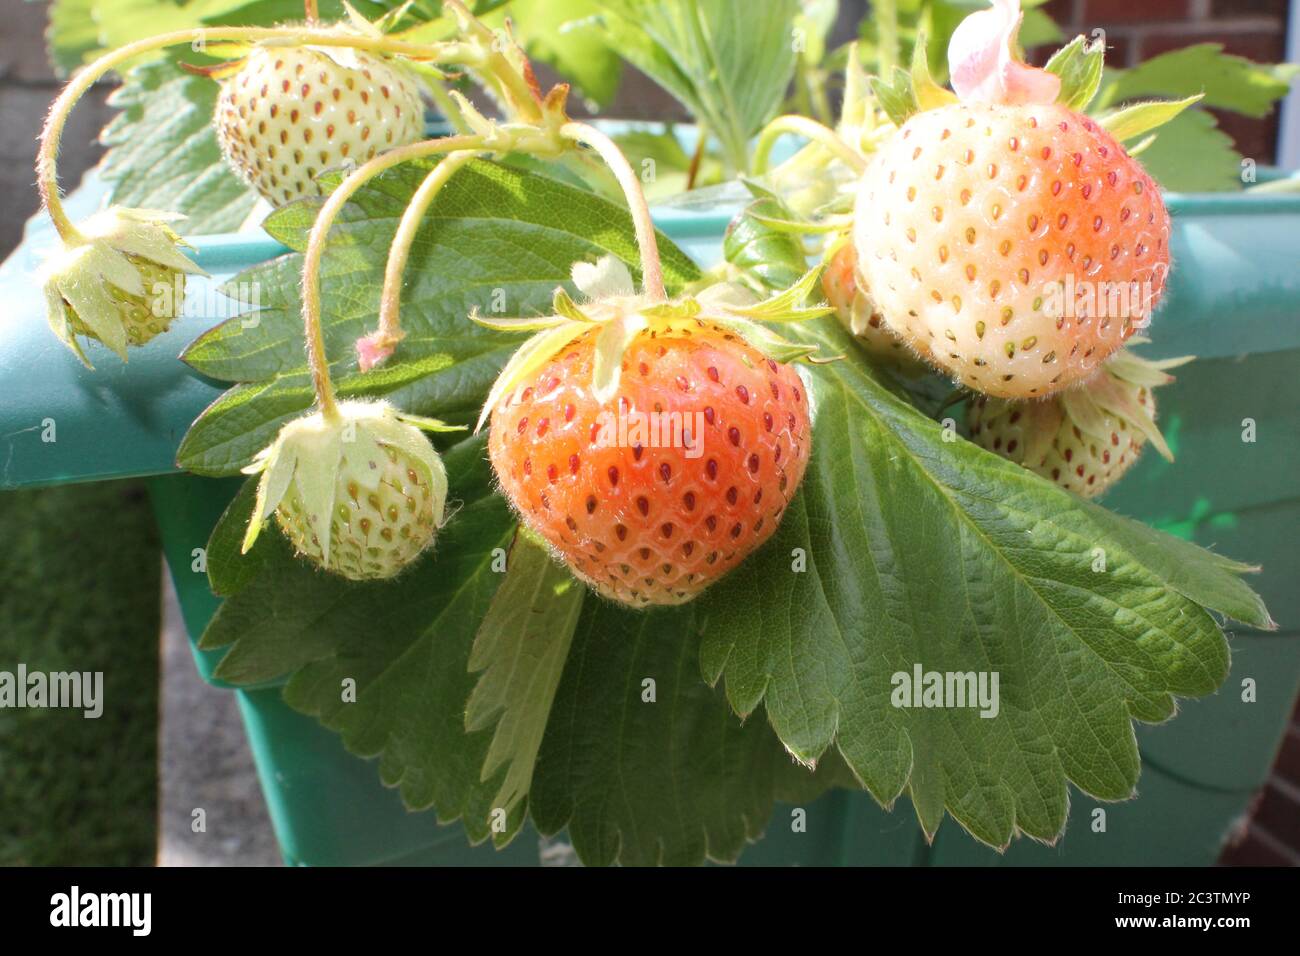 Pianta di fragola con frutta matura e sotto matura Foto Stock